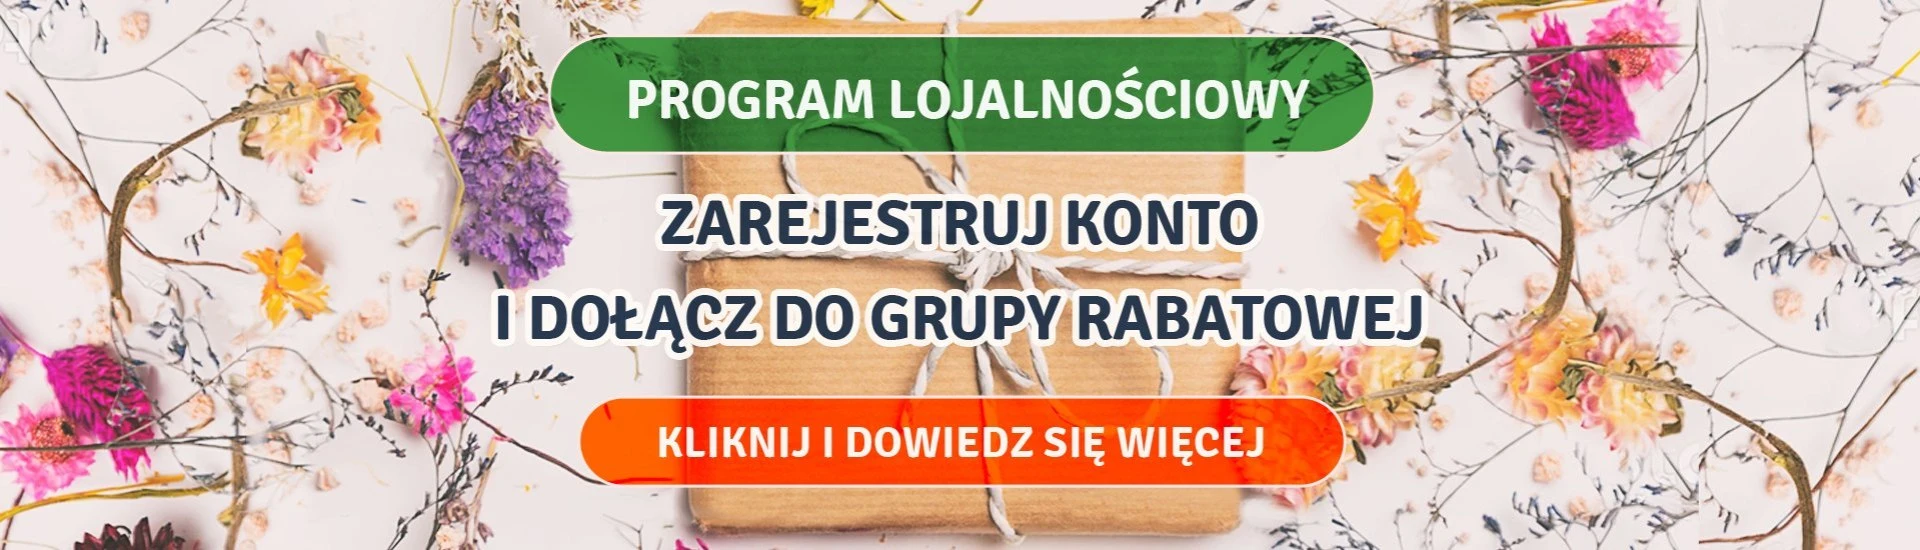 Program lojalnościowy Ekoo.pl